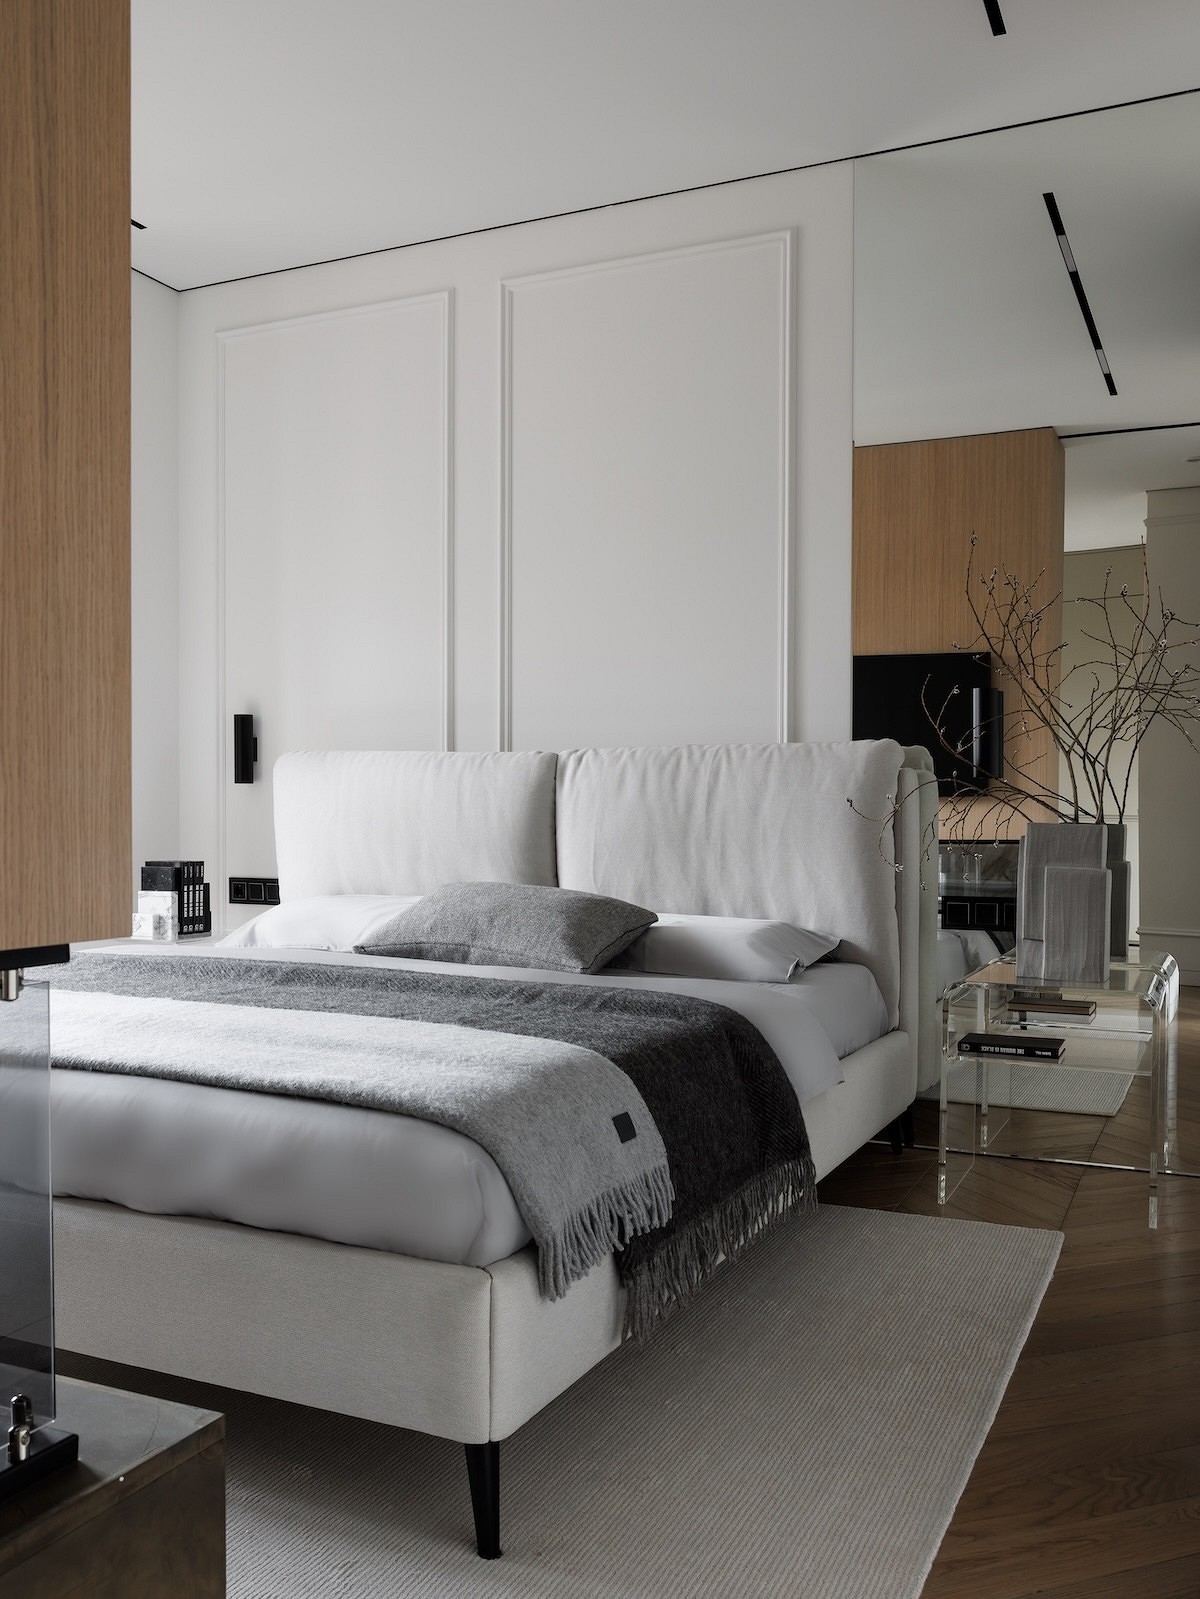 Как повесить телевизор в спальне? 7 стильных примеров от дизайнеров6